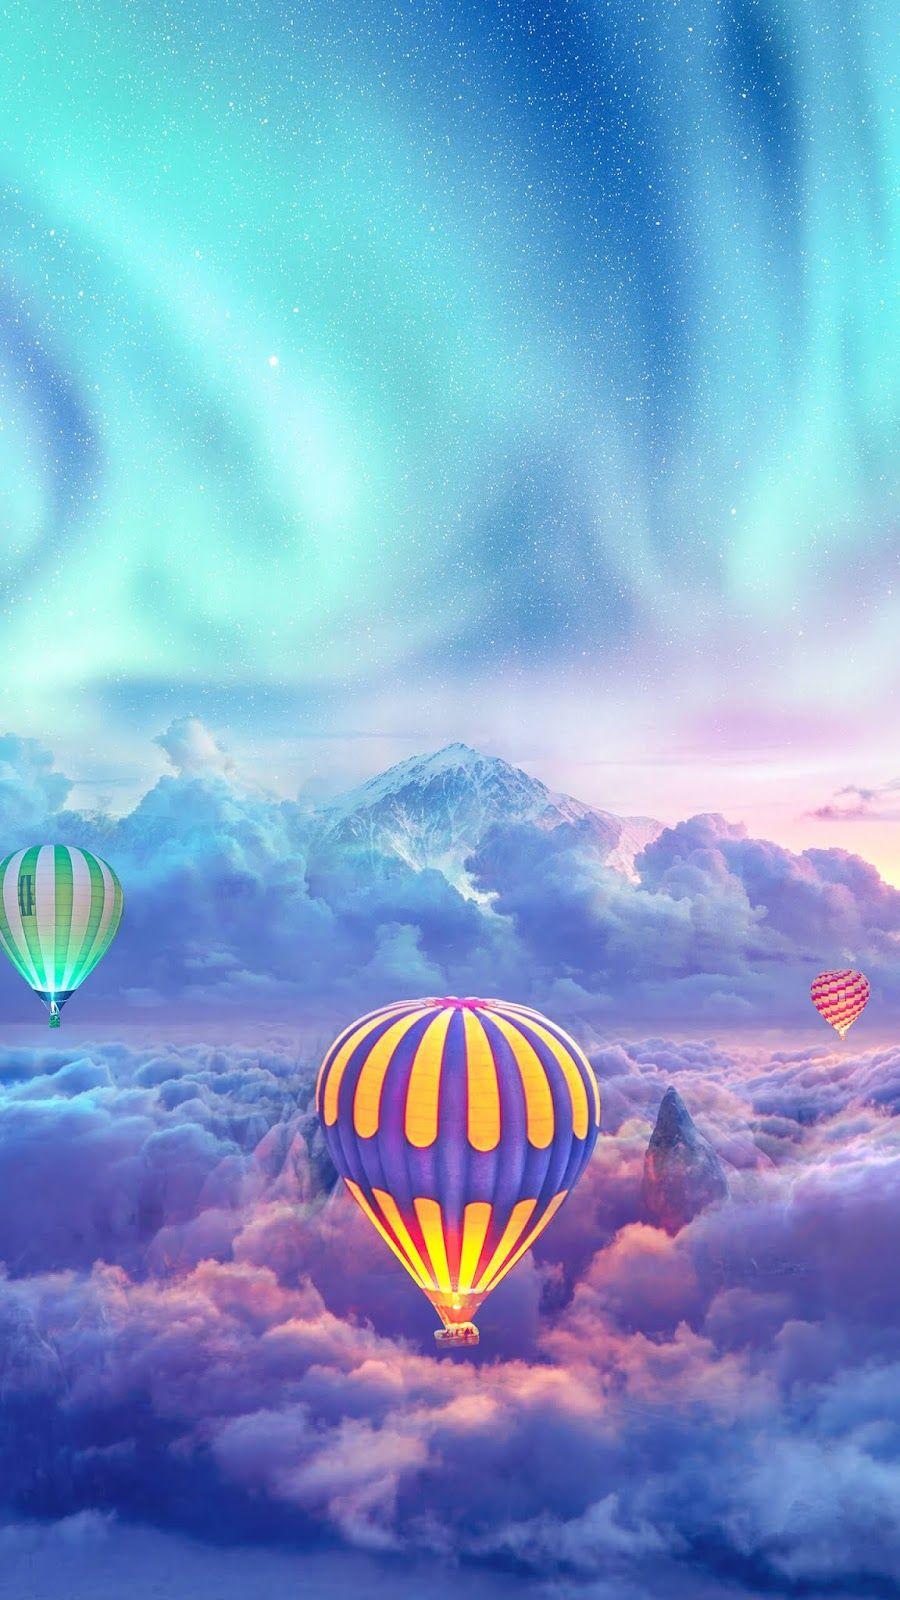 Flying high. wallpaper. Hot air balloon, iPhone wallpaper